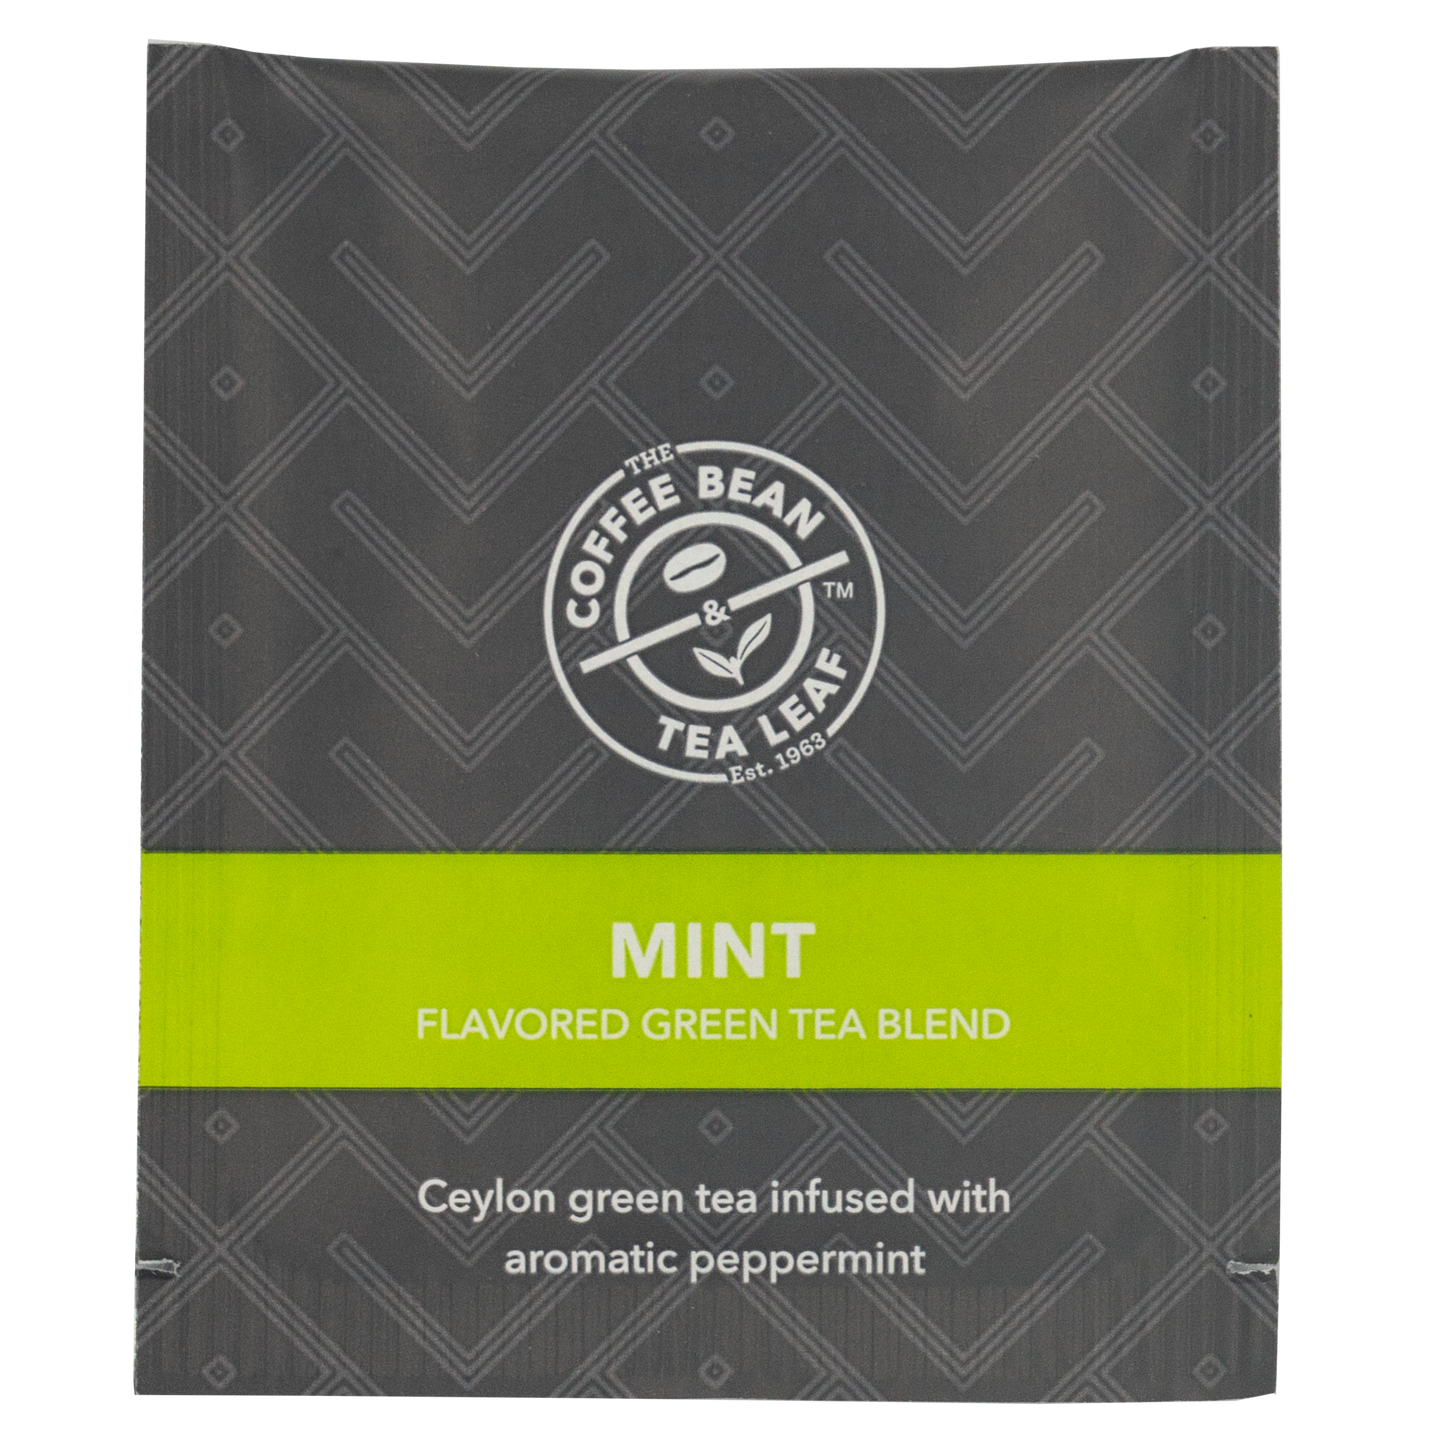 CBTL Mint Green Tea Bag